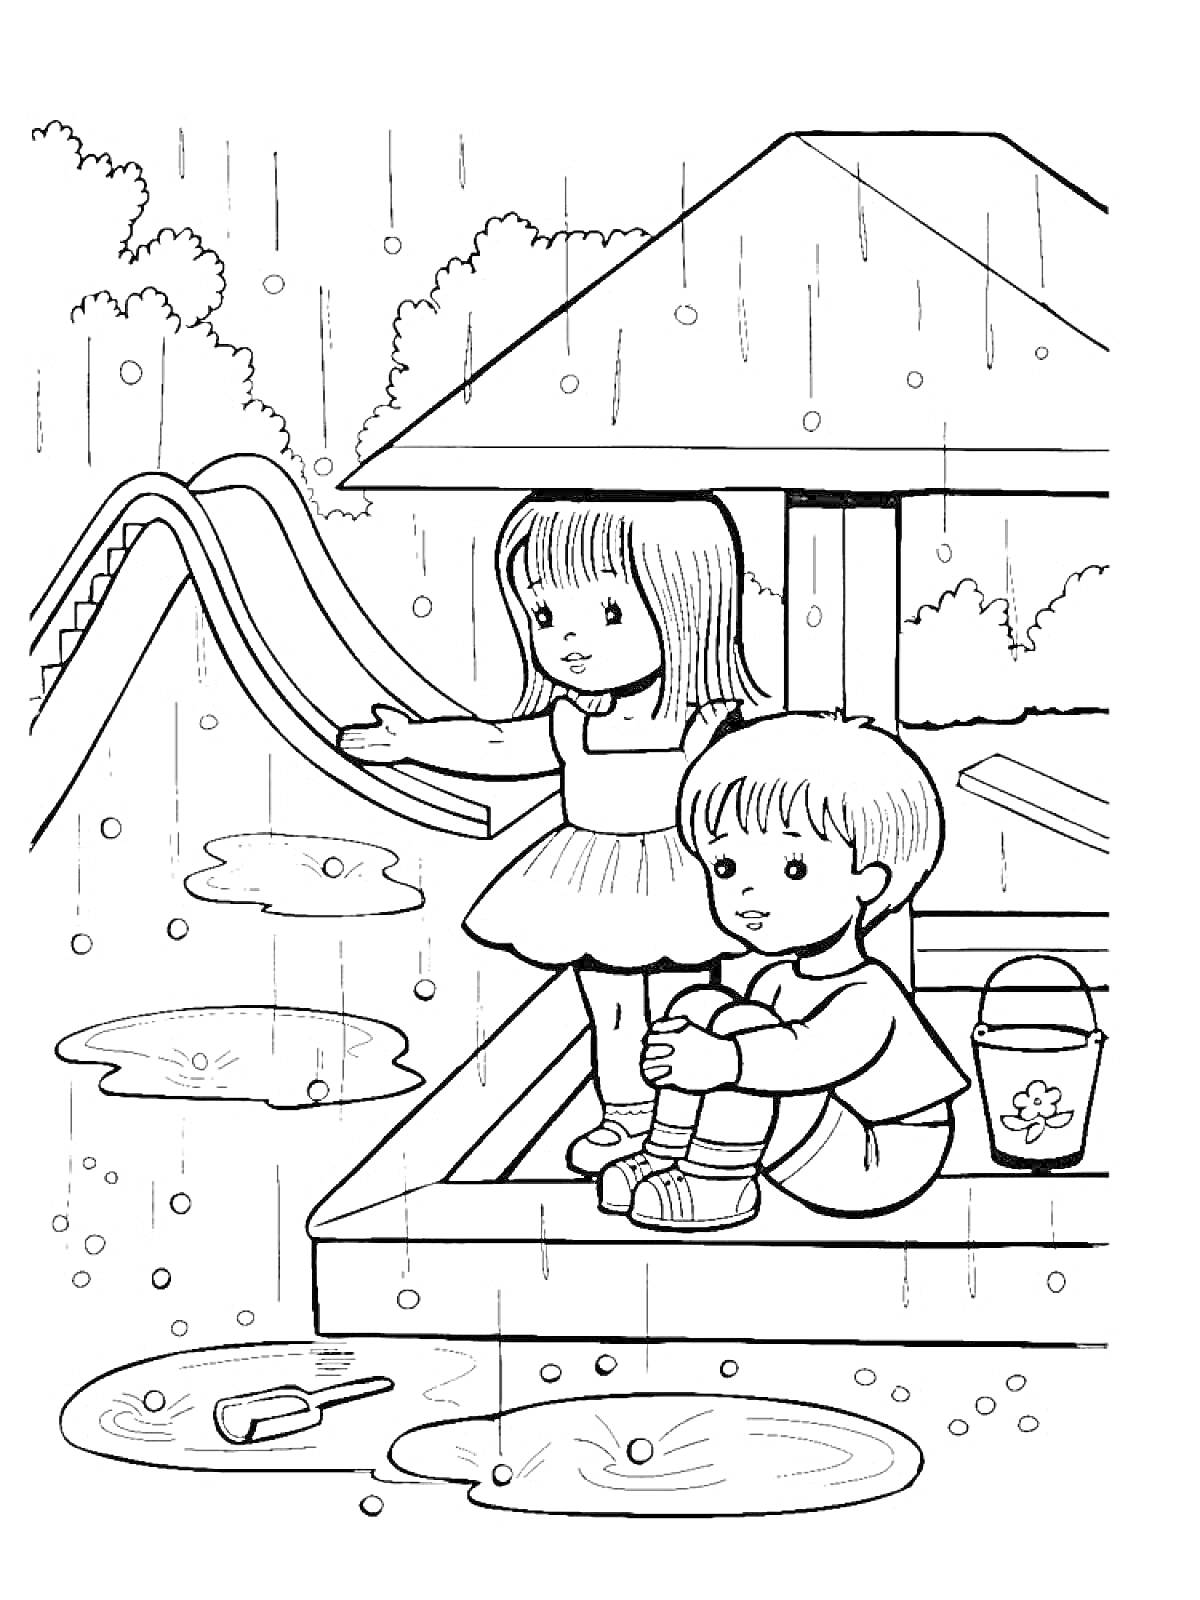 Раскраска Дети в песочнице на крытой площадке во время дождя. На заднем плане видна горка. На переднем плане лужи с игрушками.